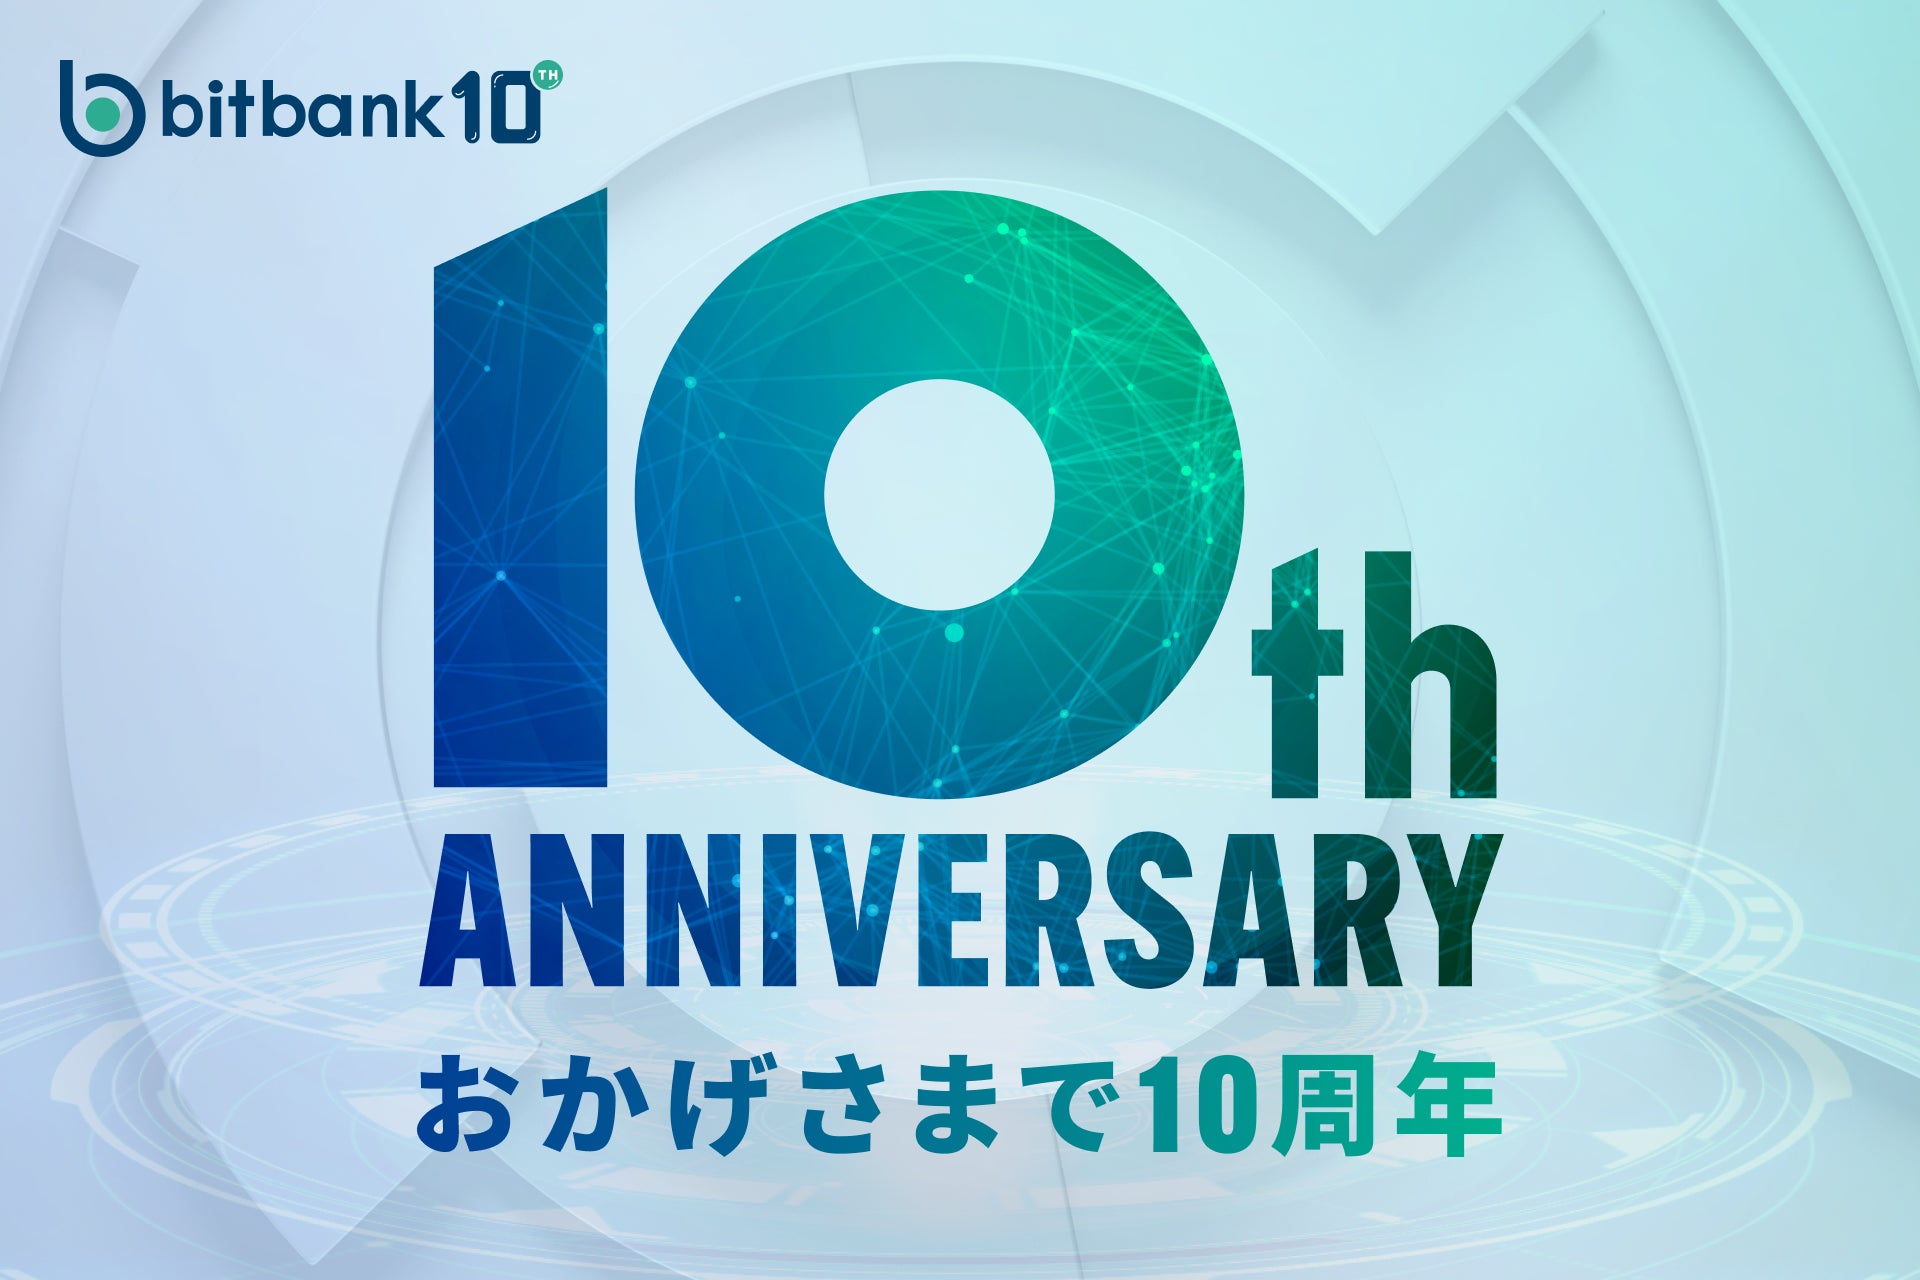 【暗号資産取引ならビットバンク】ビットバンクは創立10周年を迎え、10周年を記念した特設サイトを公開し、キャンペーンを実施します！